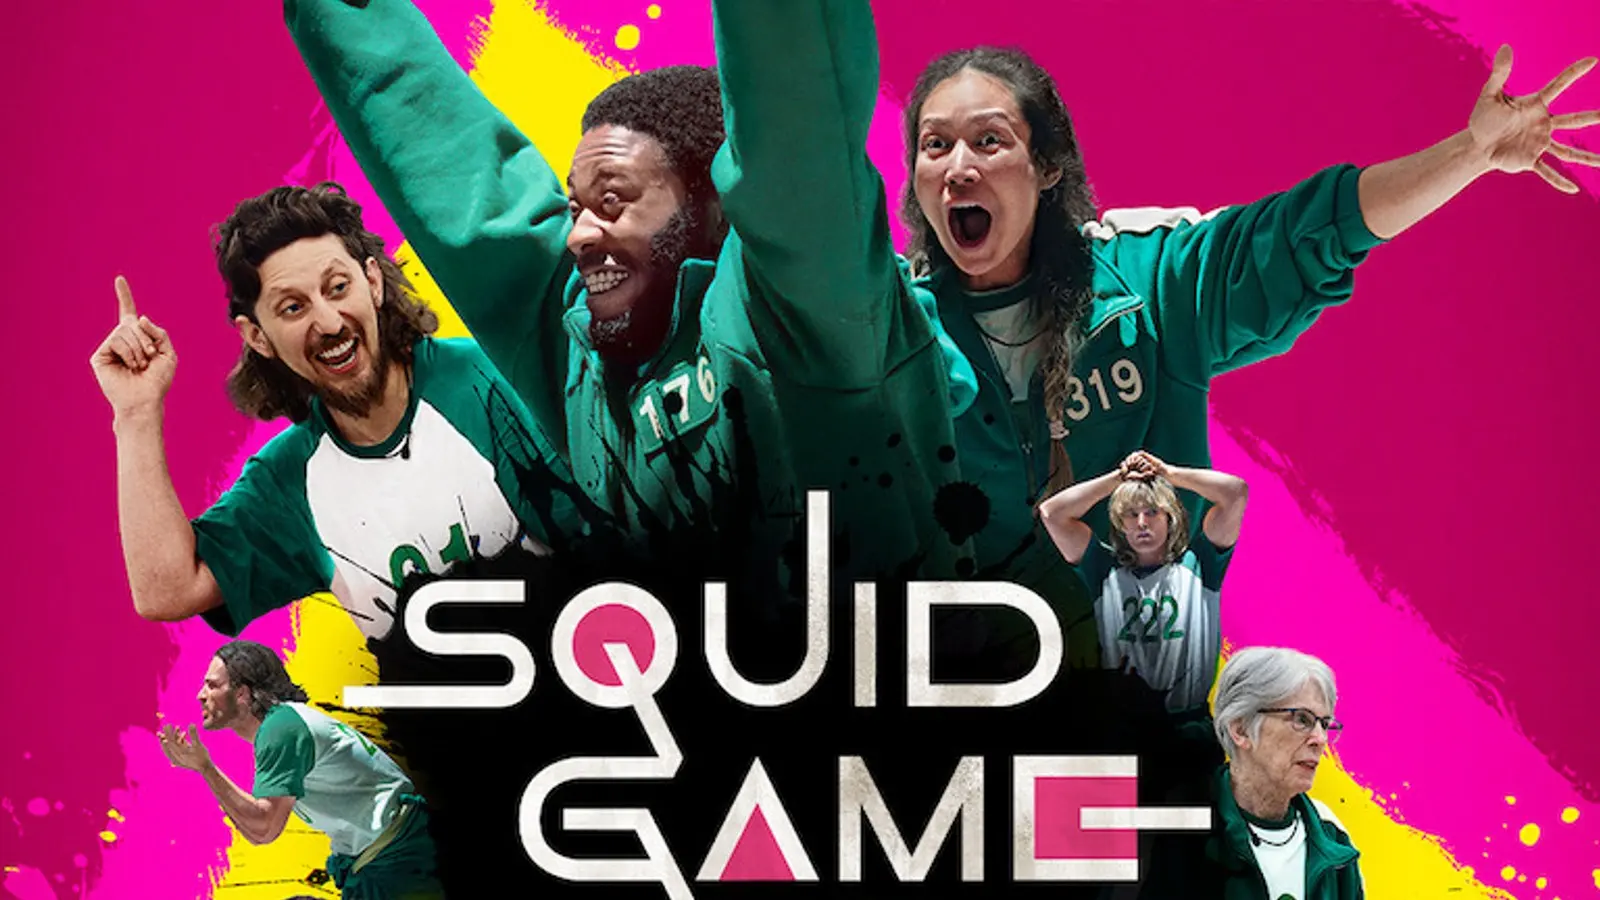 Round 6: série coreana da Netflix traz jogo de sobrevivência